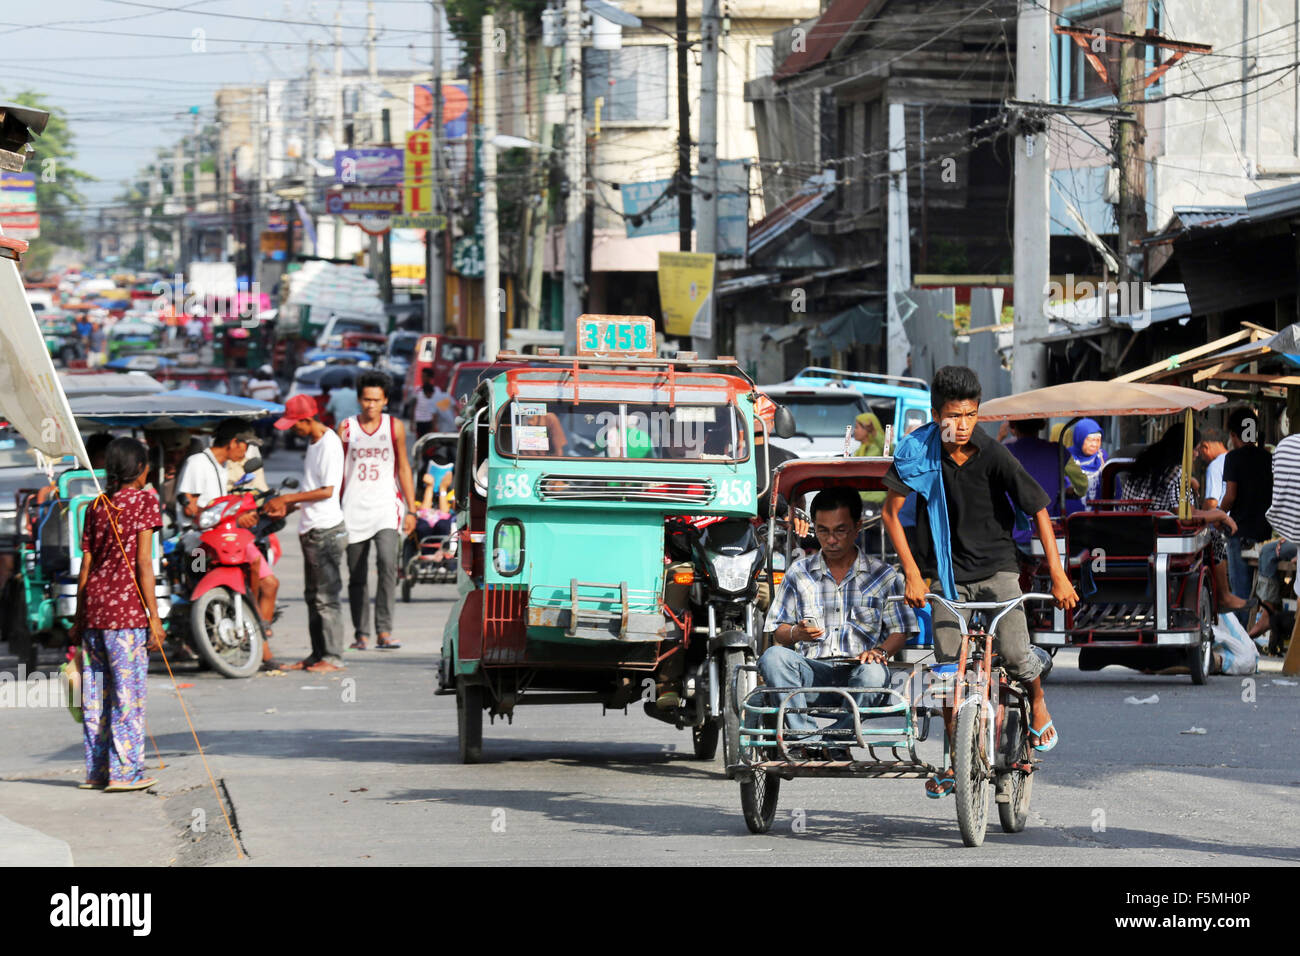 Street scene in the City of Cotabato, Mindanao, The Philippines, Asia Stock Photo